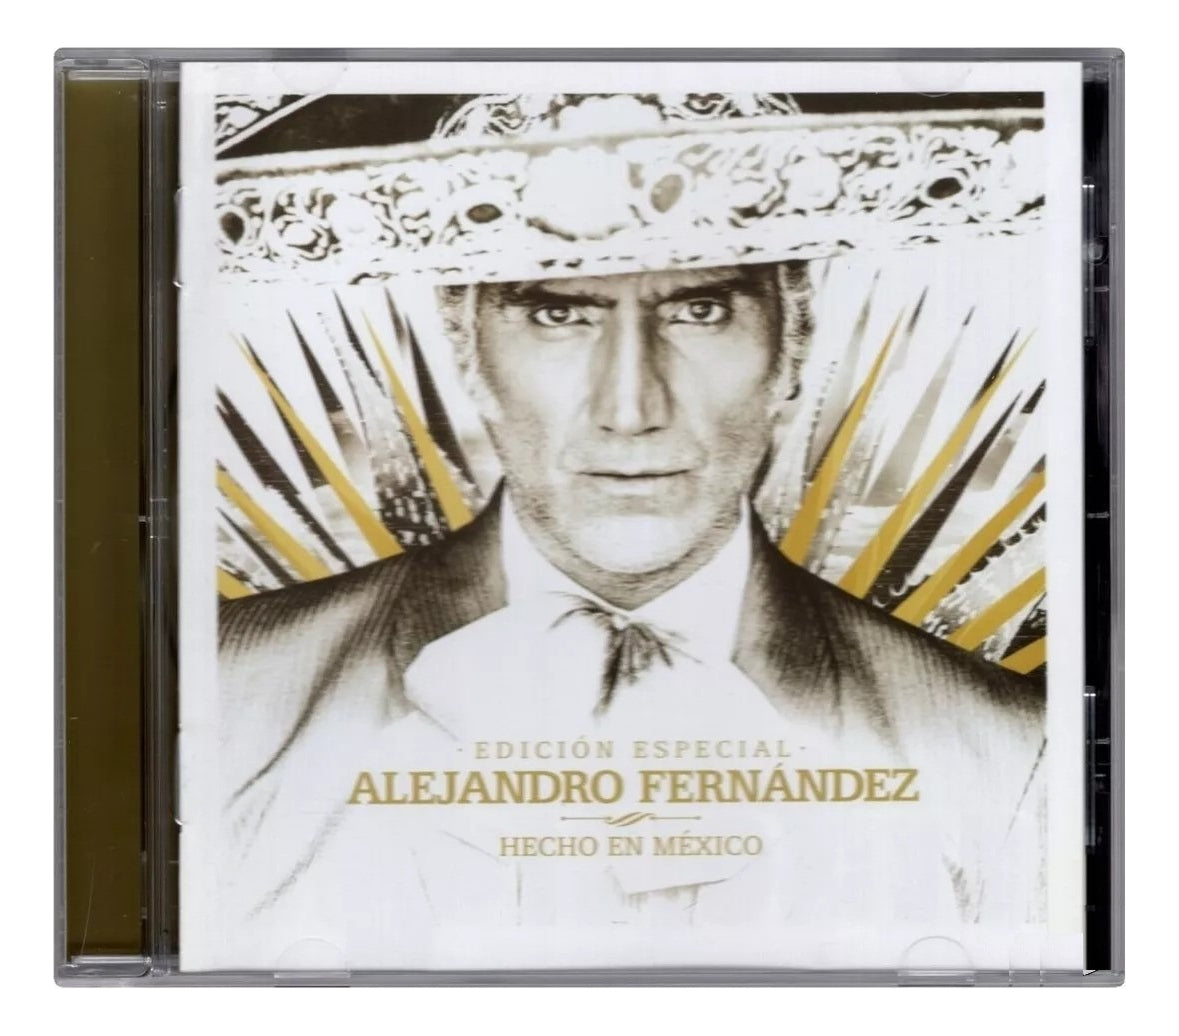 Alejandro Fernandez Hecho En Mexico Edicion Especial Disco Cd